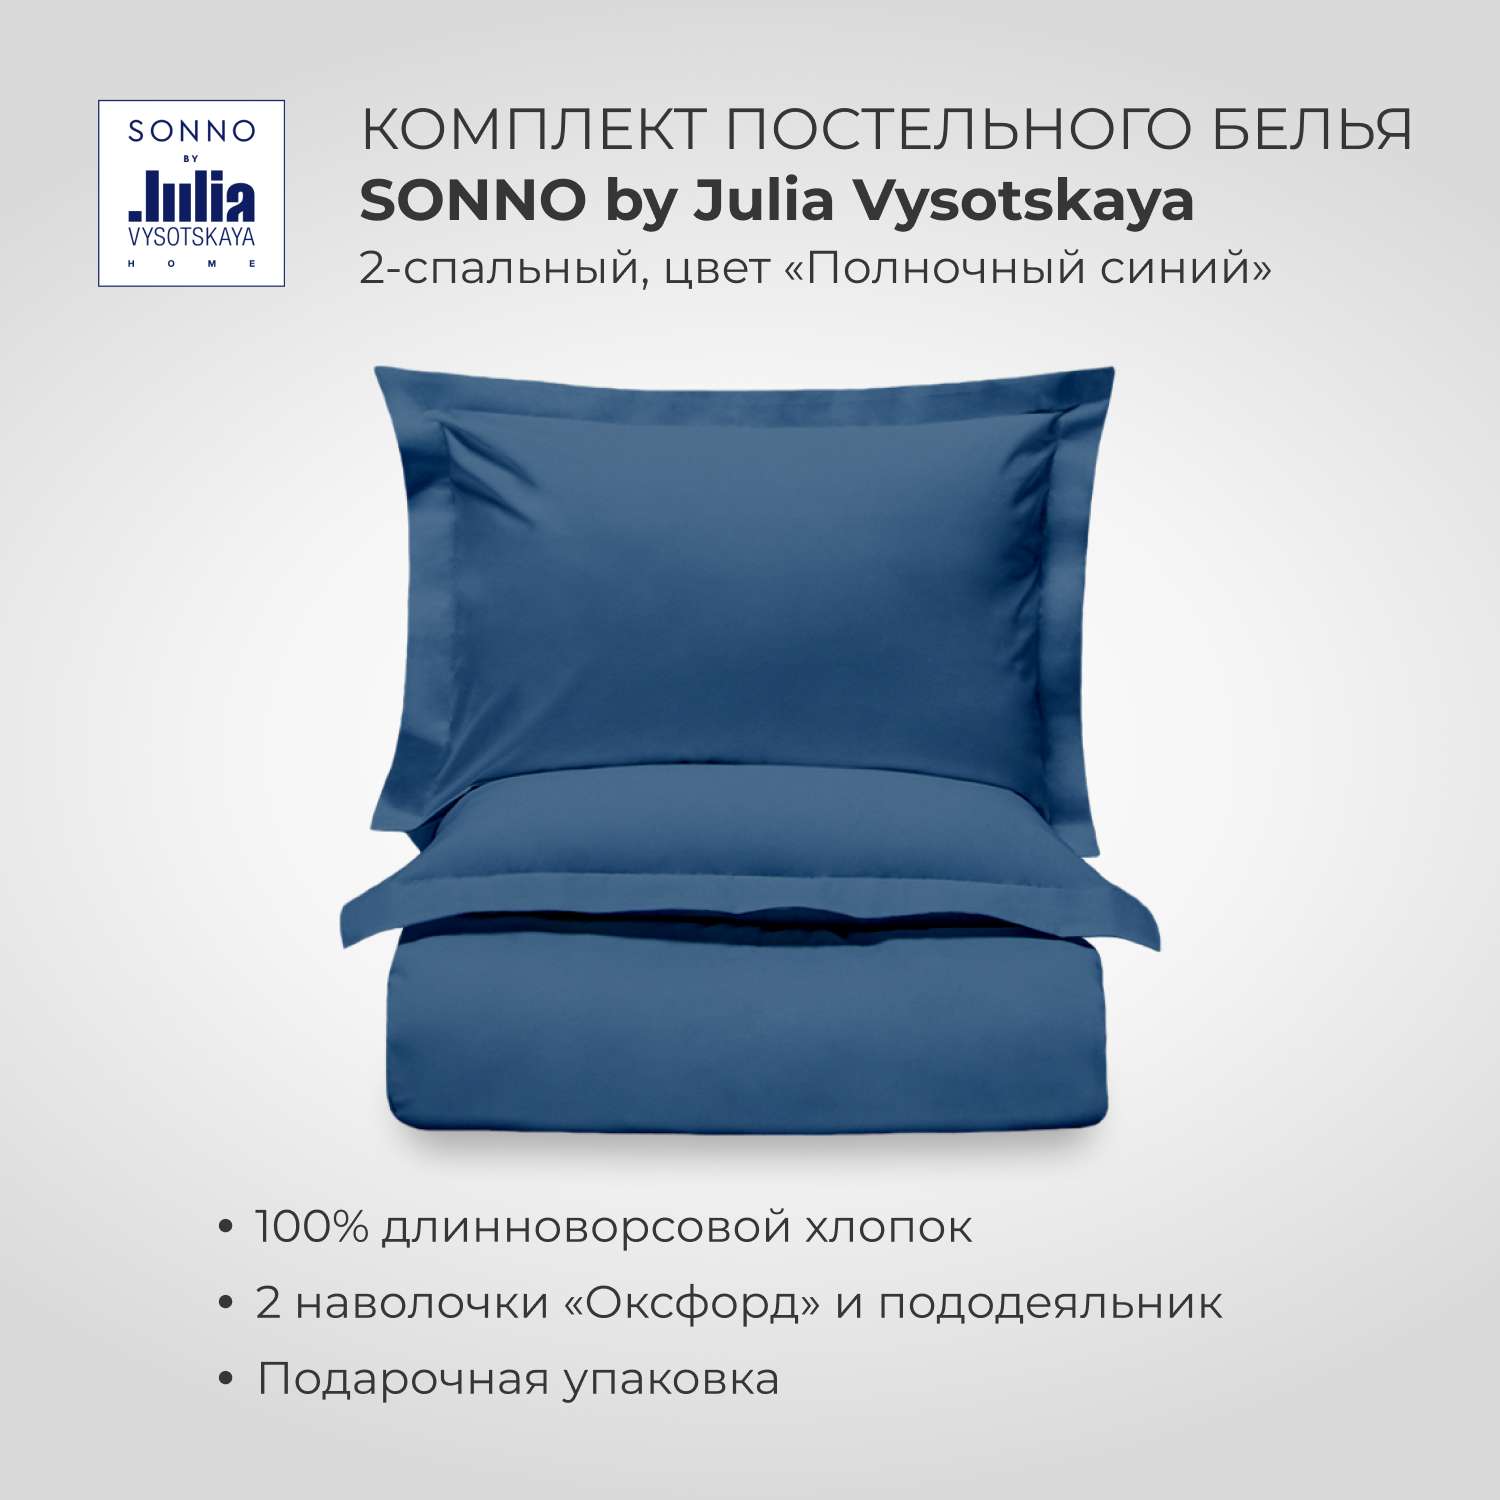 Комплект постельного белья SONNO by Julia Vysotskaya 2-спальный Цвет Полночный синий - фото 1